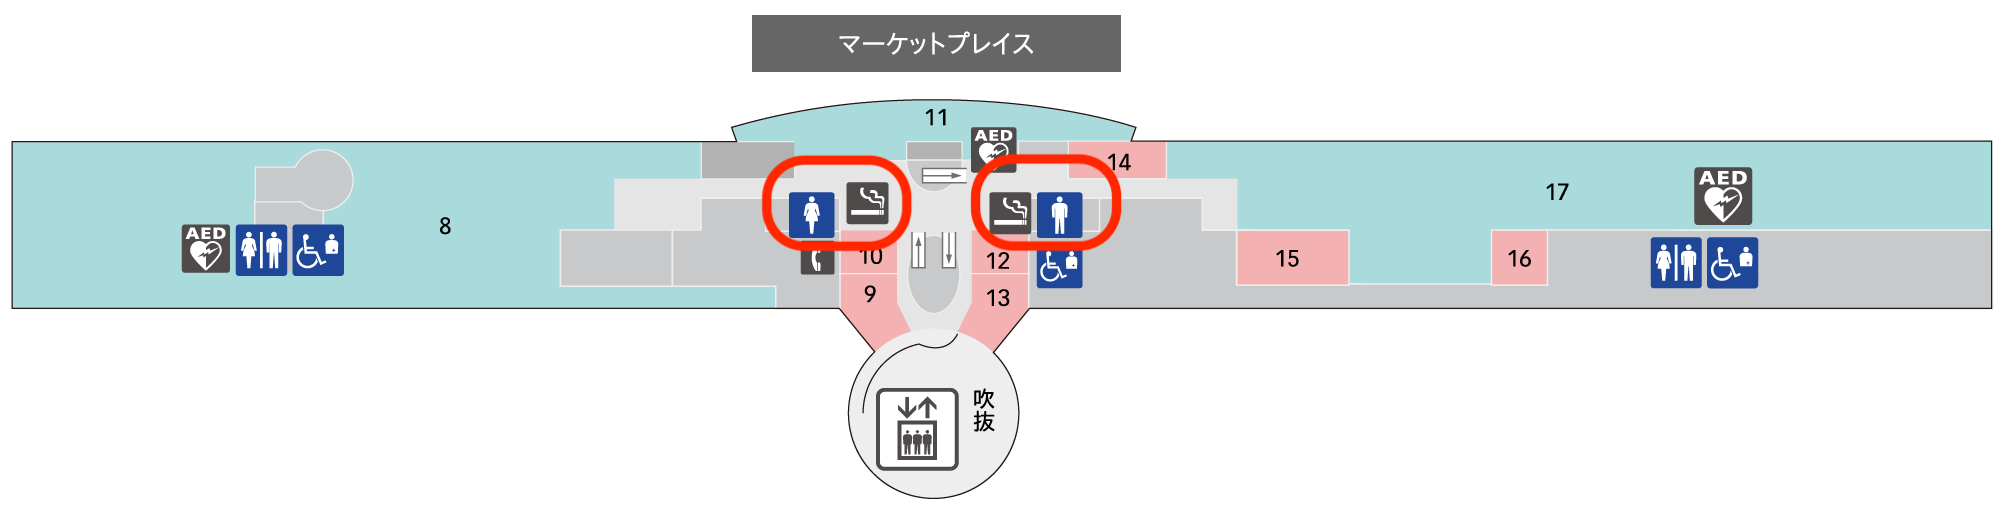 羽田空港第2ターミナル喫煙所5F